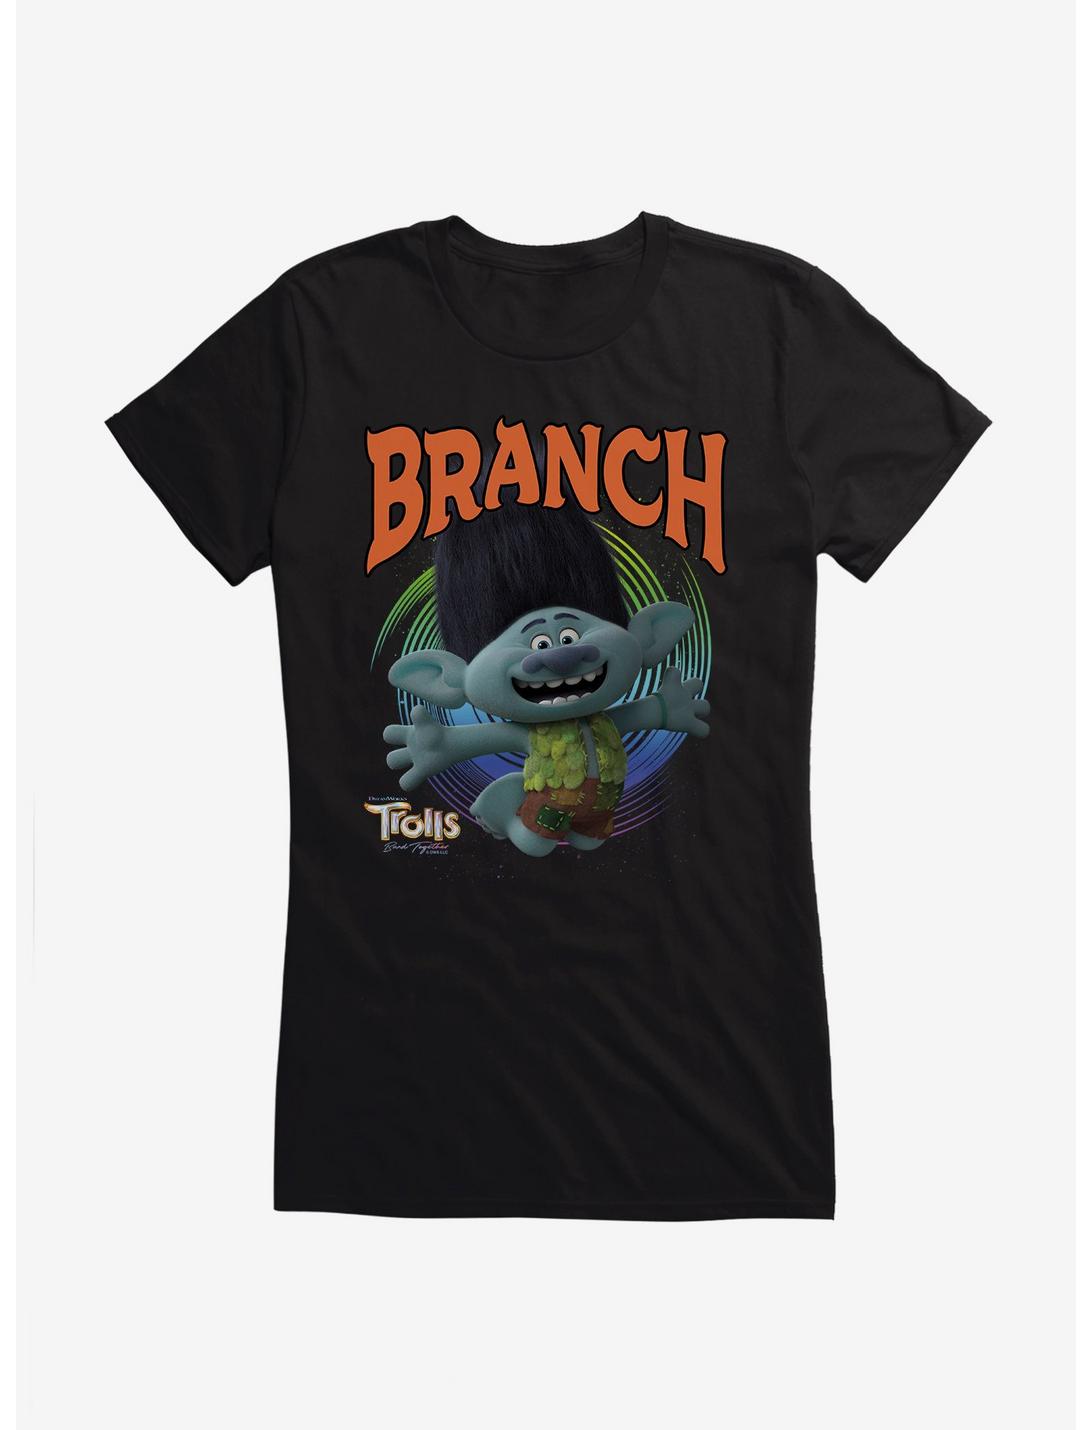 Trolls 3 Band Together Branch Girls T-Shirt, BLACK, hi-res